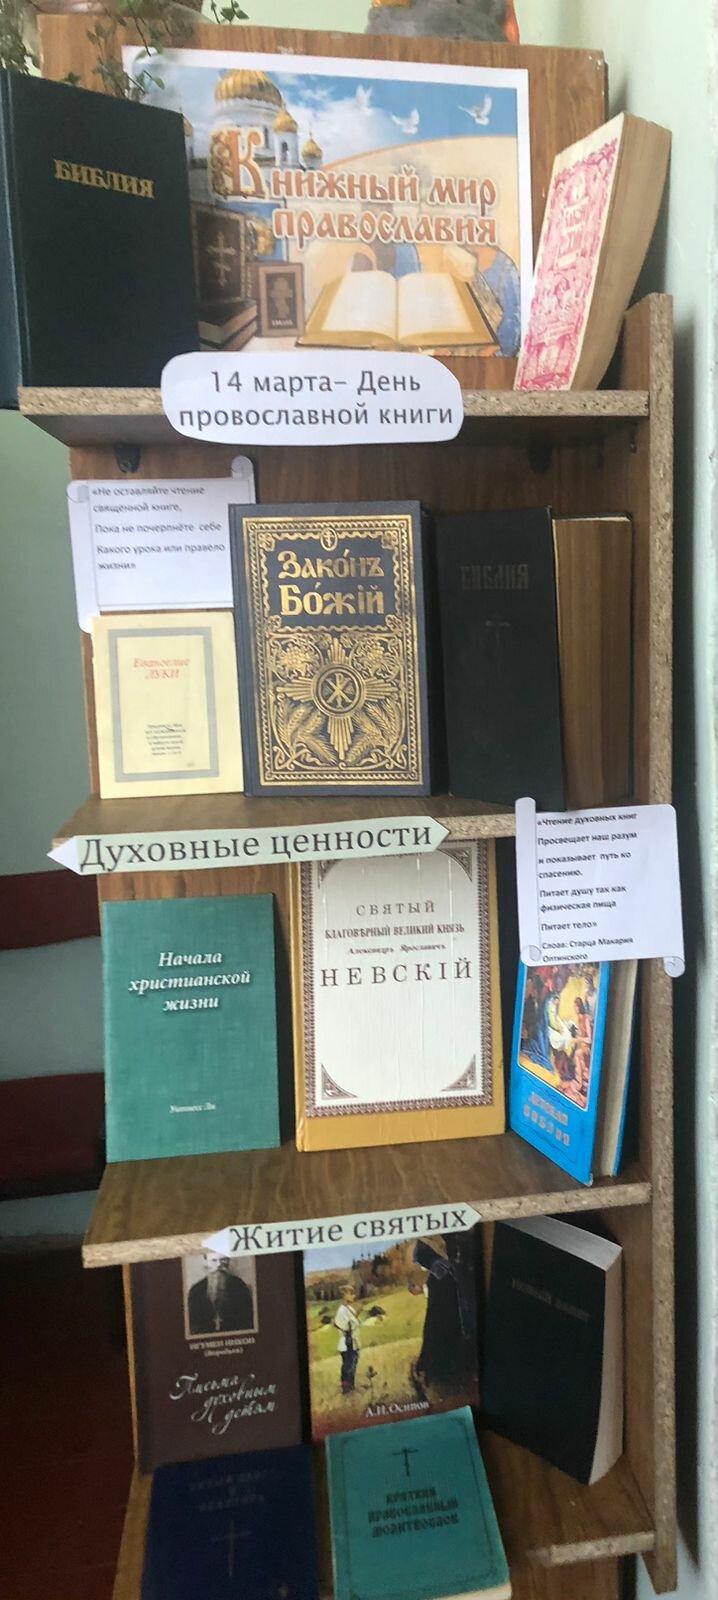 Выставка «Книжный мир православия»